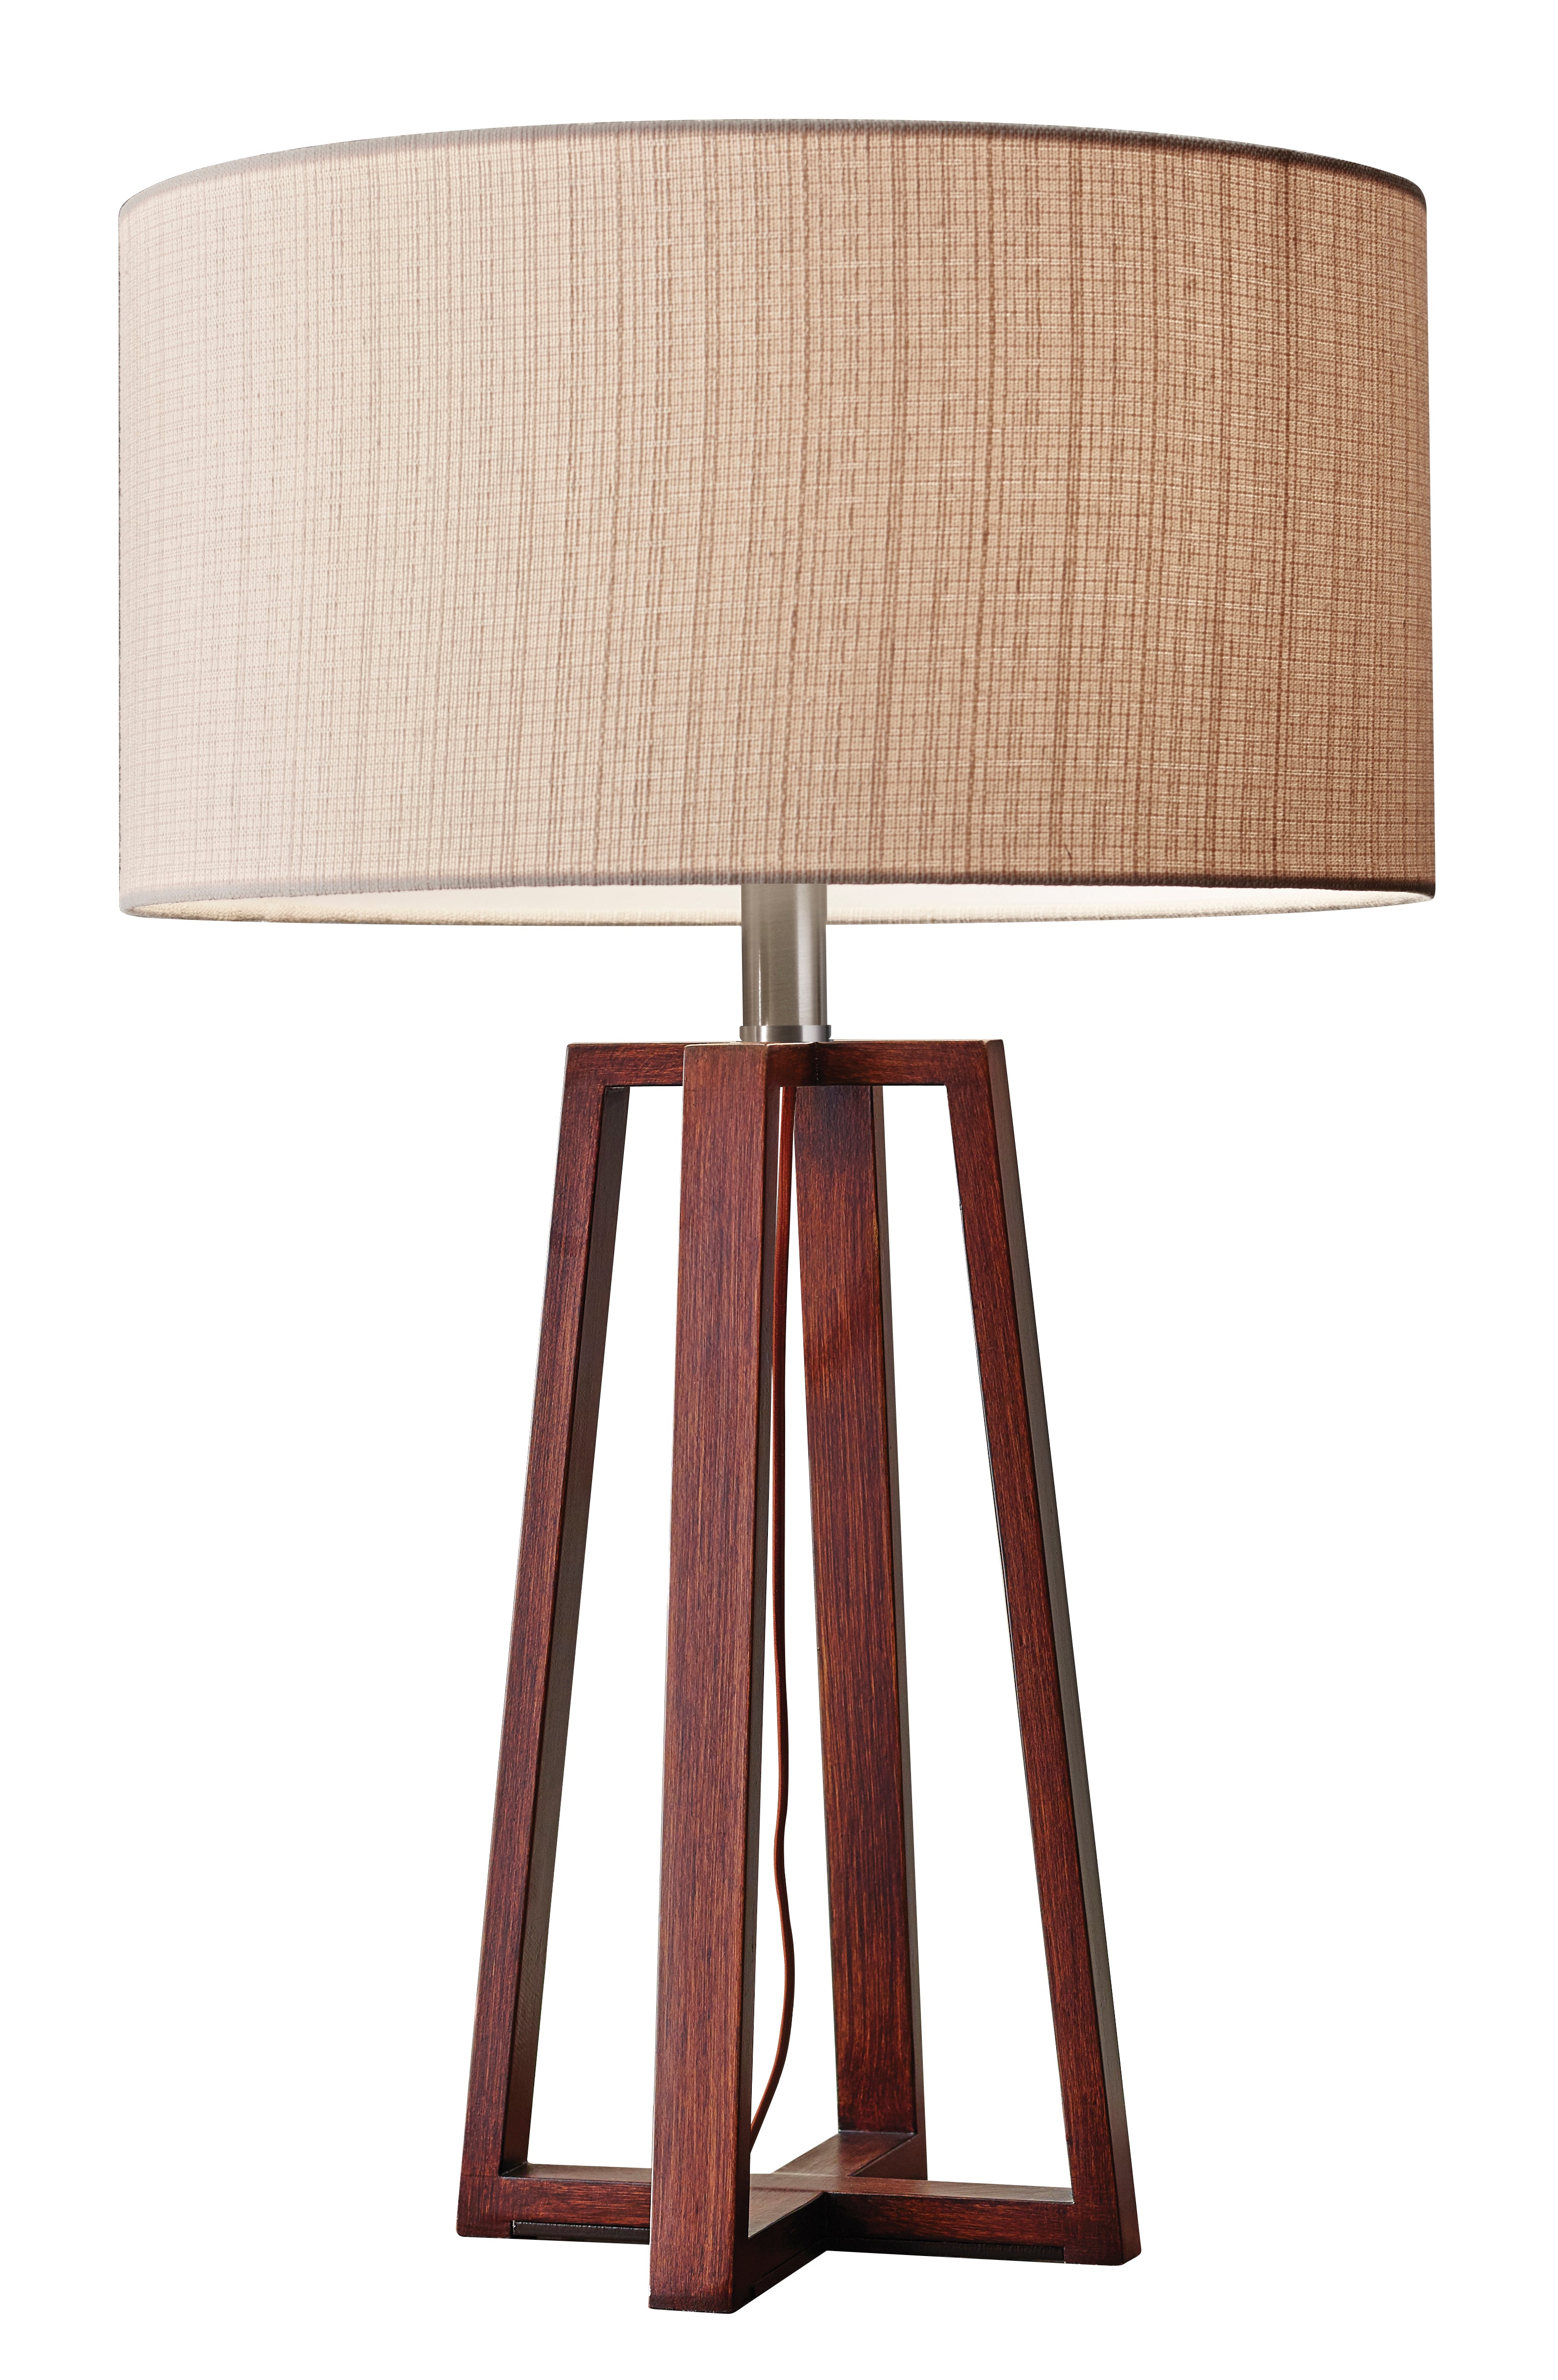 QUINN Lampe sur table Bois - 1503-15 | ADESSO